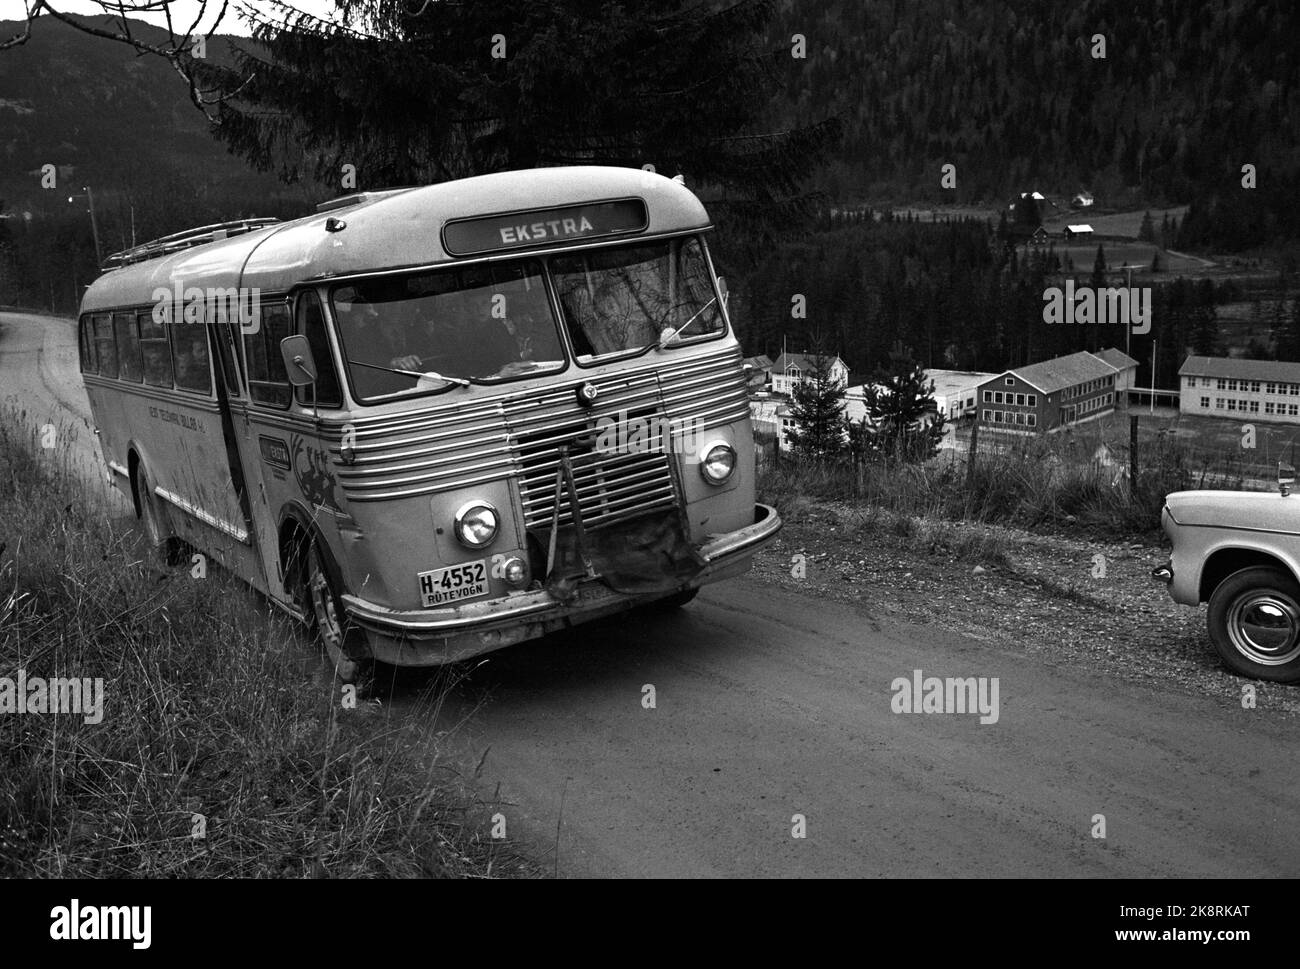 Dalen in Telemark 1963. Der Schulbus voller Schüler. Tokke Schule Hintergrund. Foto: Aage Storløkken / Aktuell / NTB Stockfoto